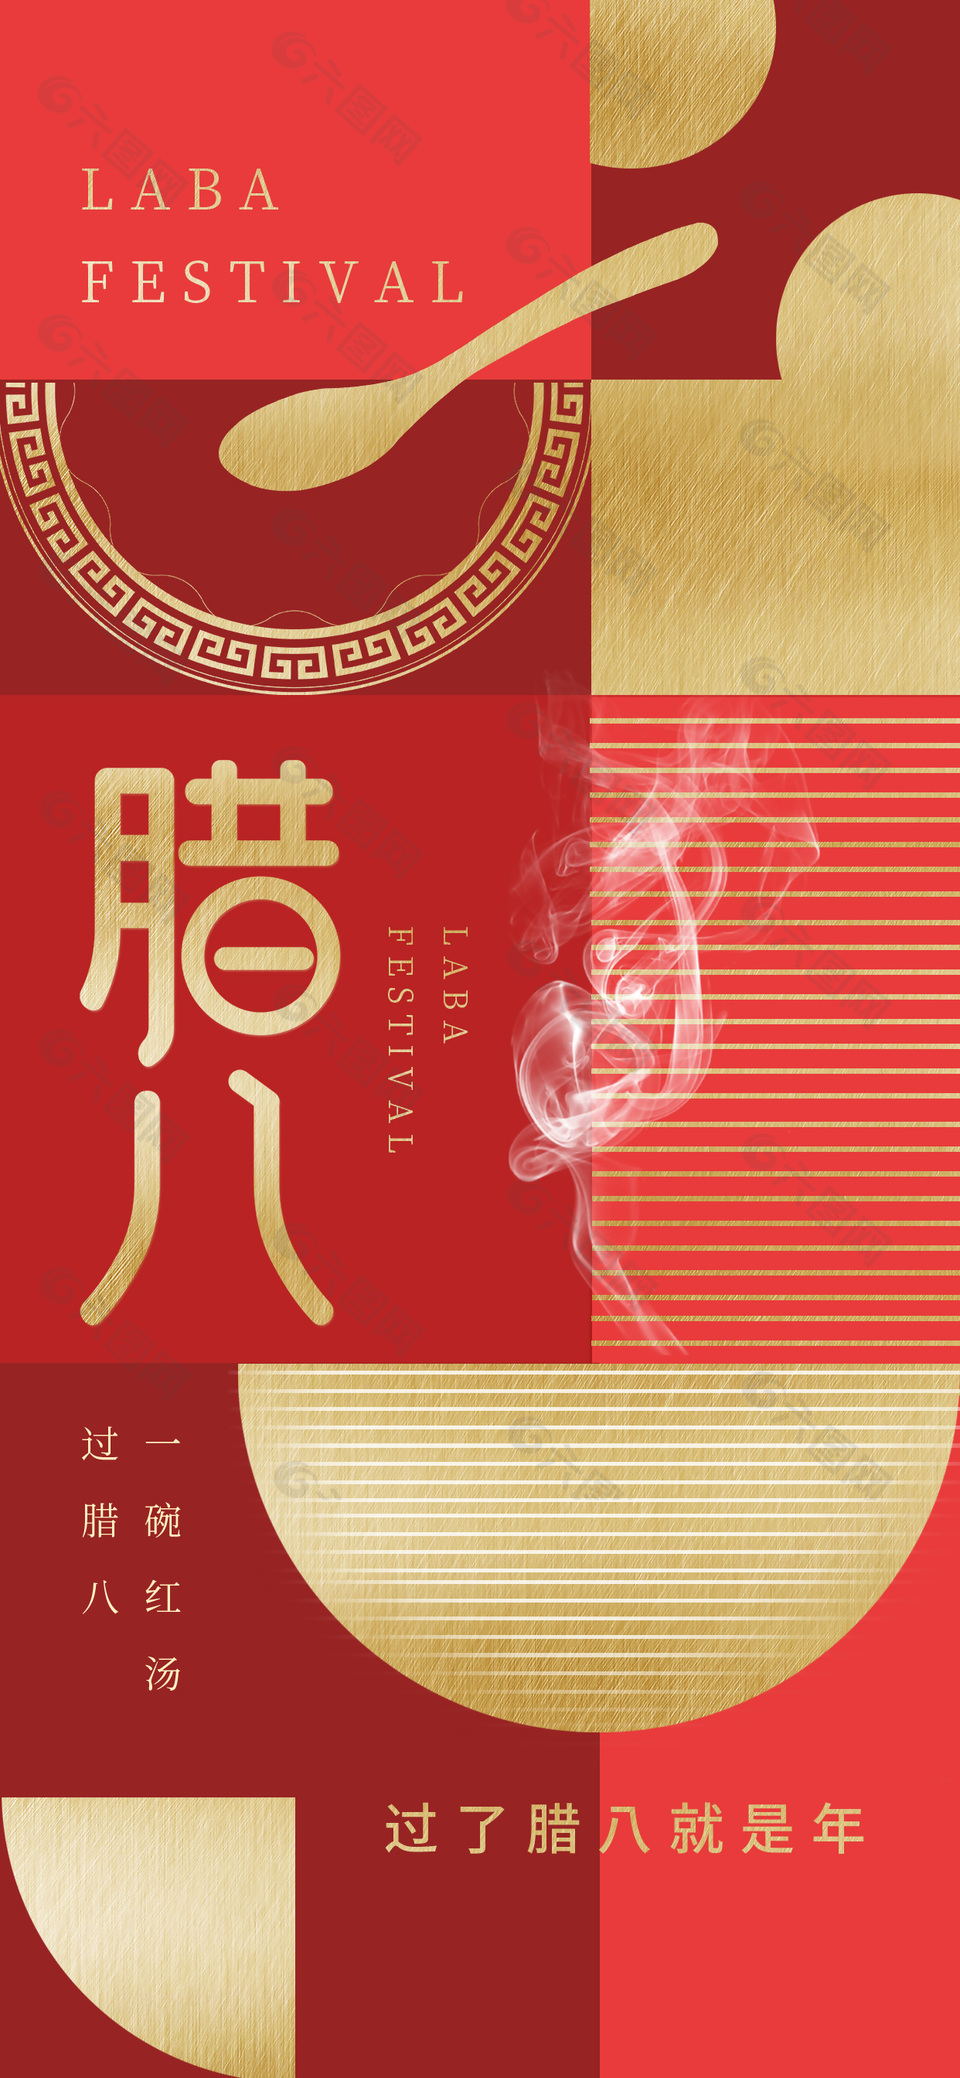 一碗红汤过腊八传统节日宣传海报模版